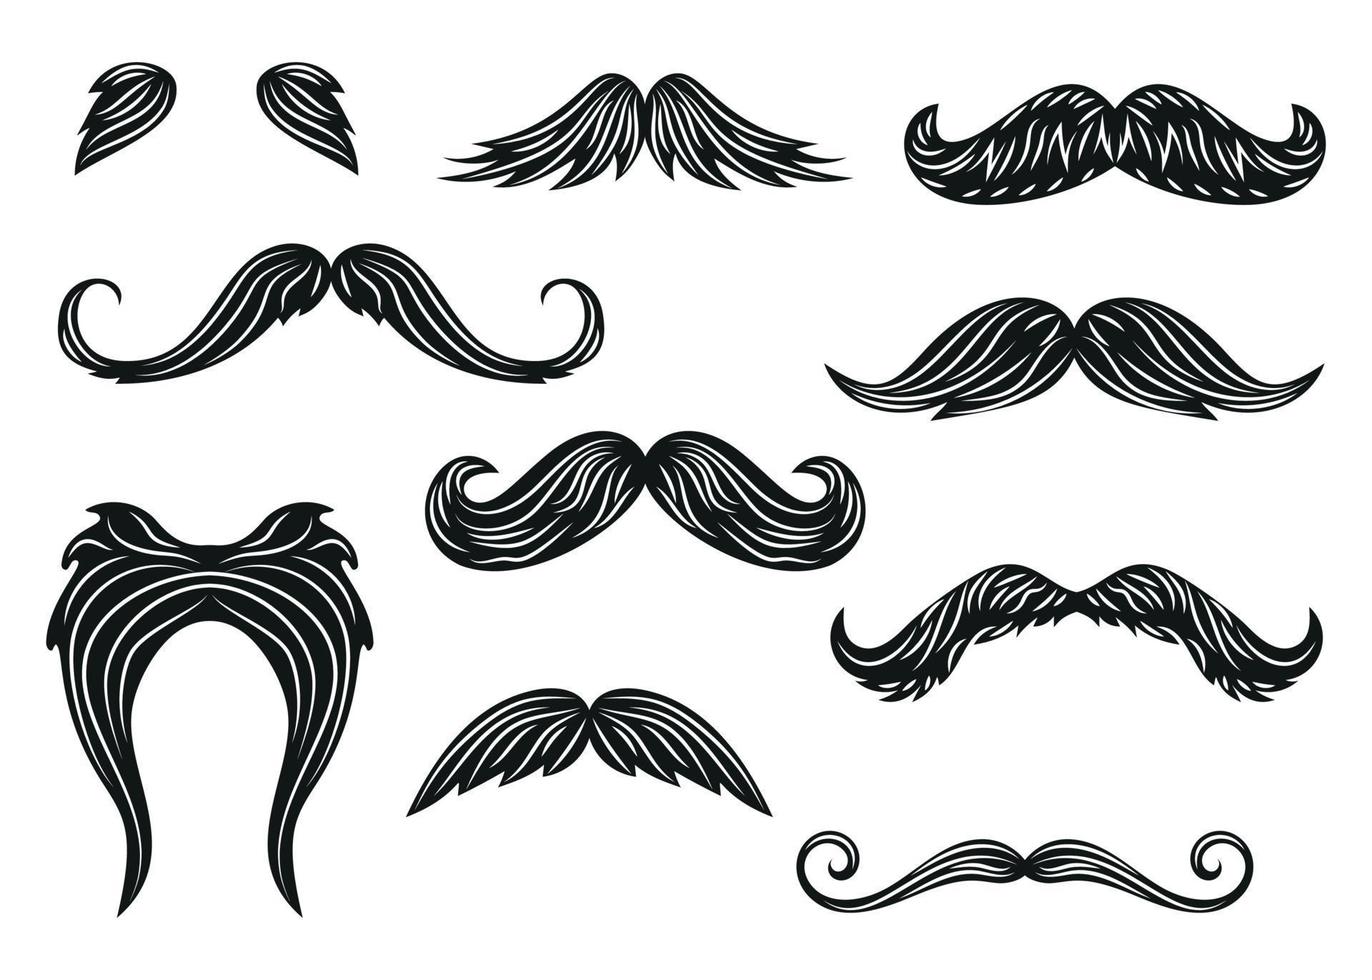 schwarzer schnurrbart symbole barbershop dekorative illustration isoliert vektor